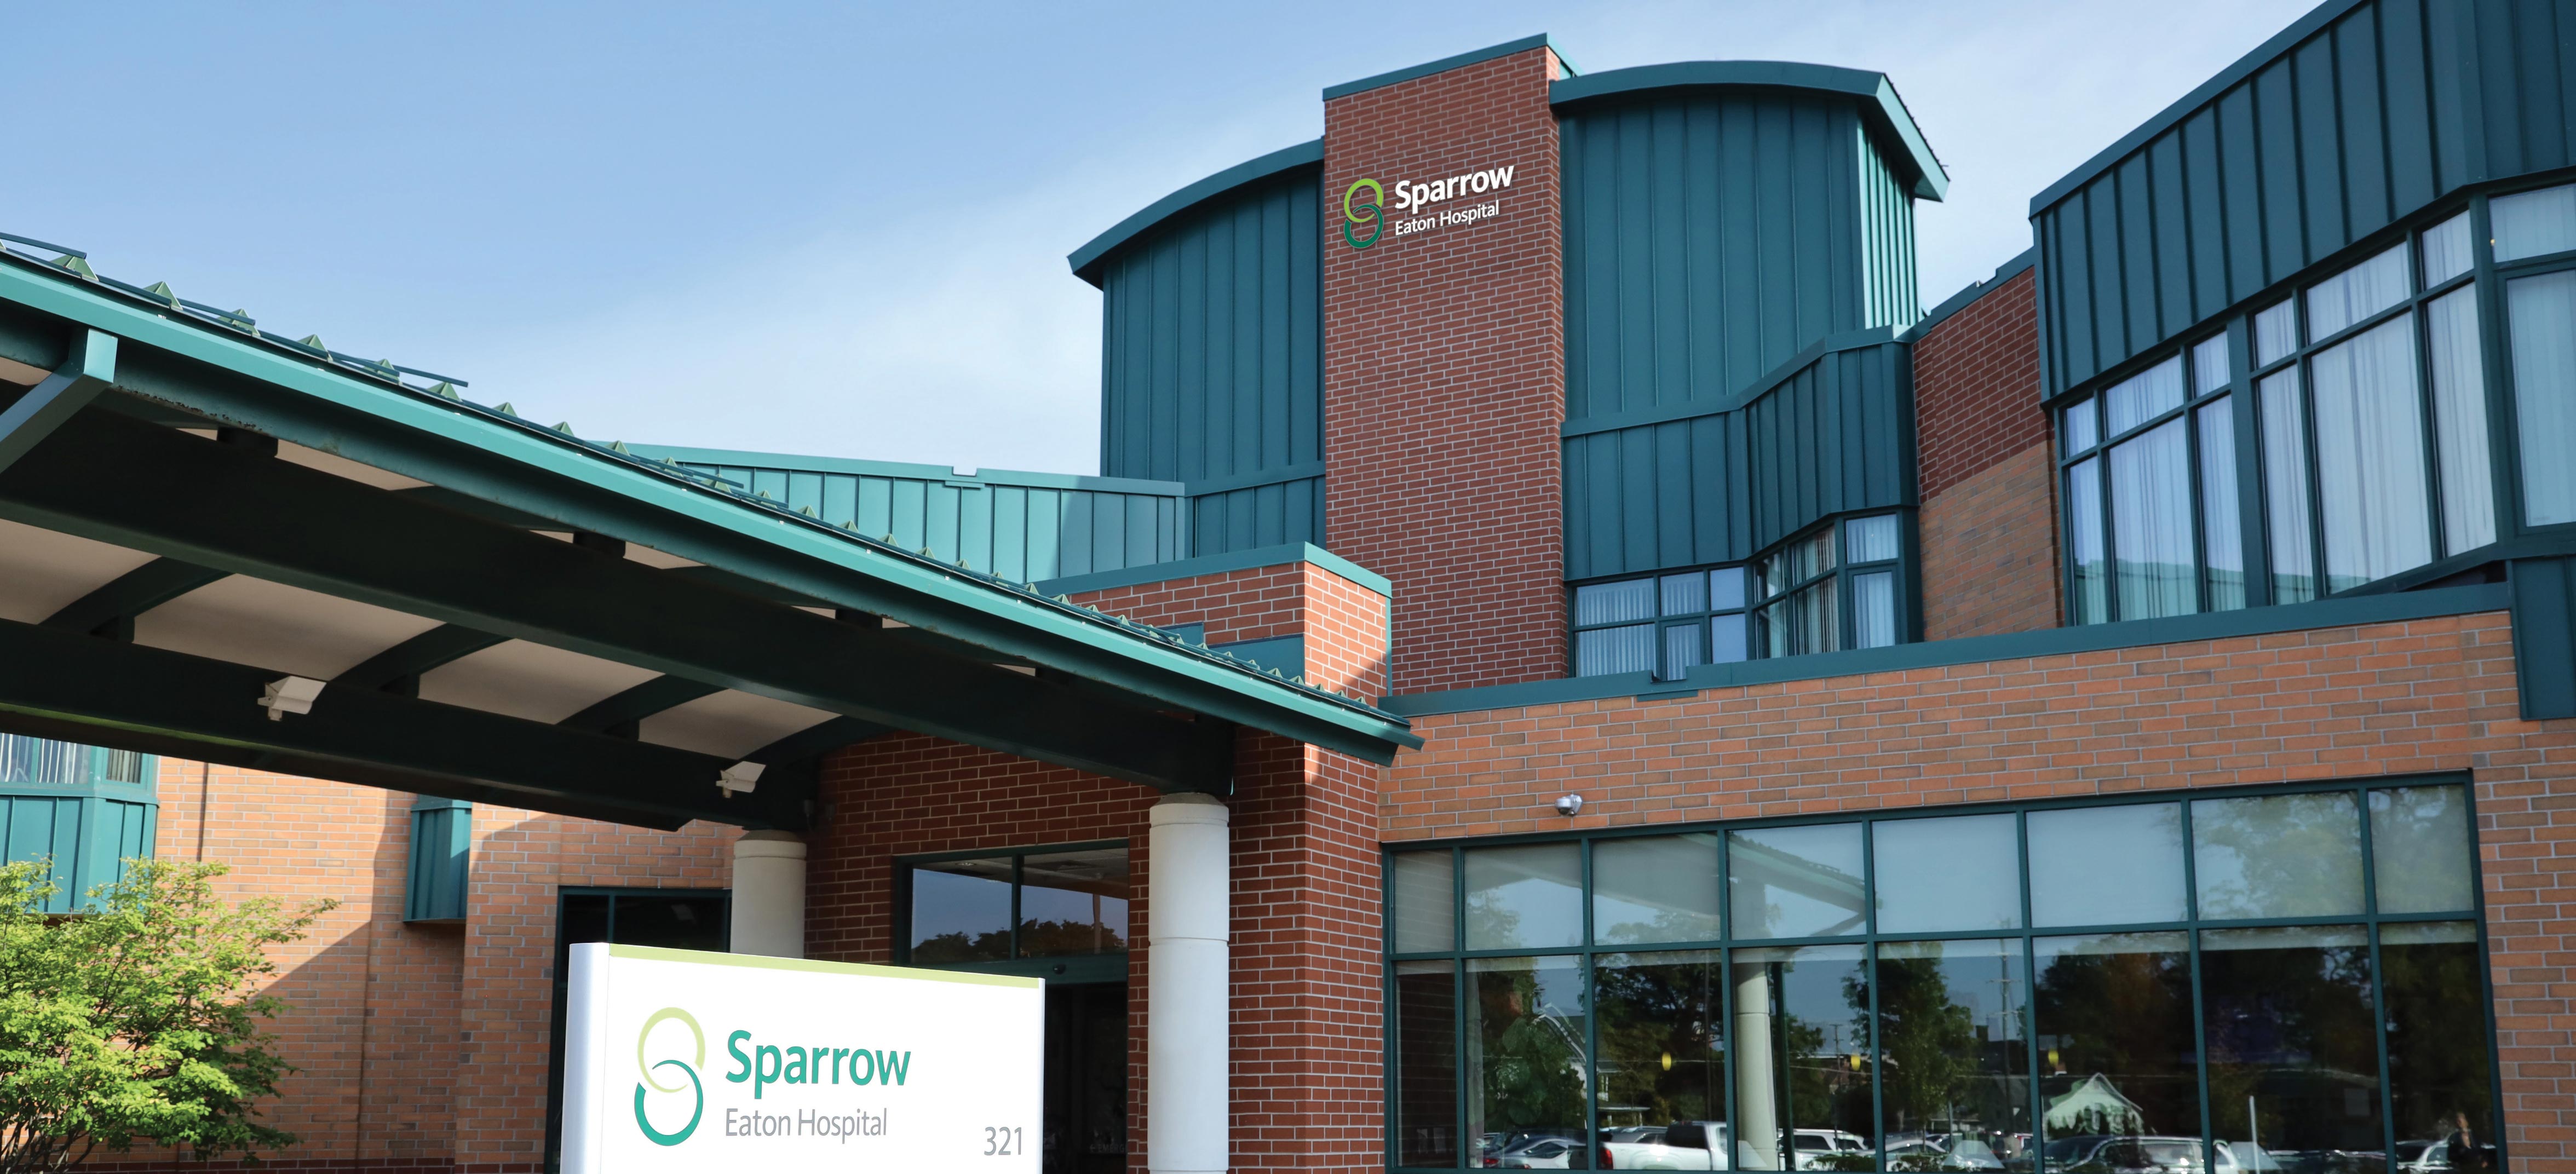 Sparrow Eaton Hospital